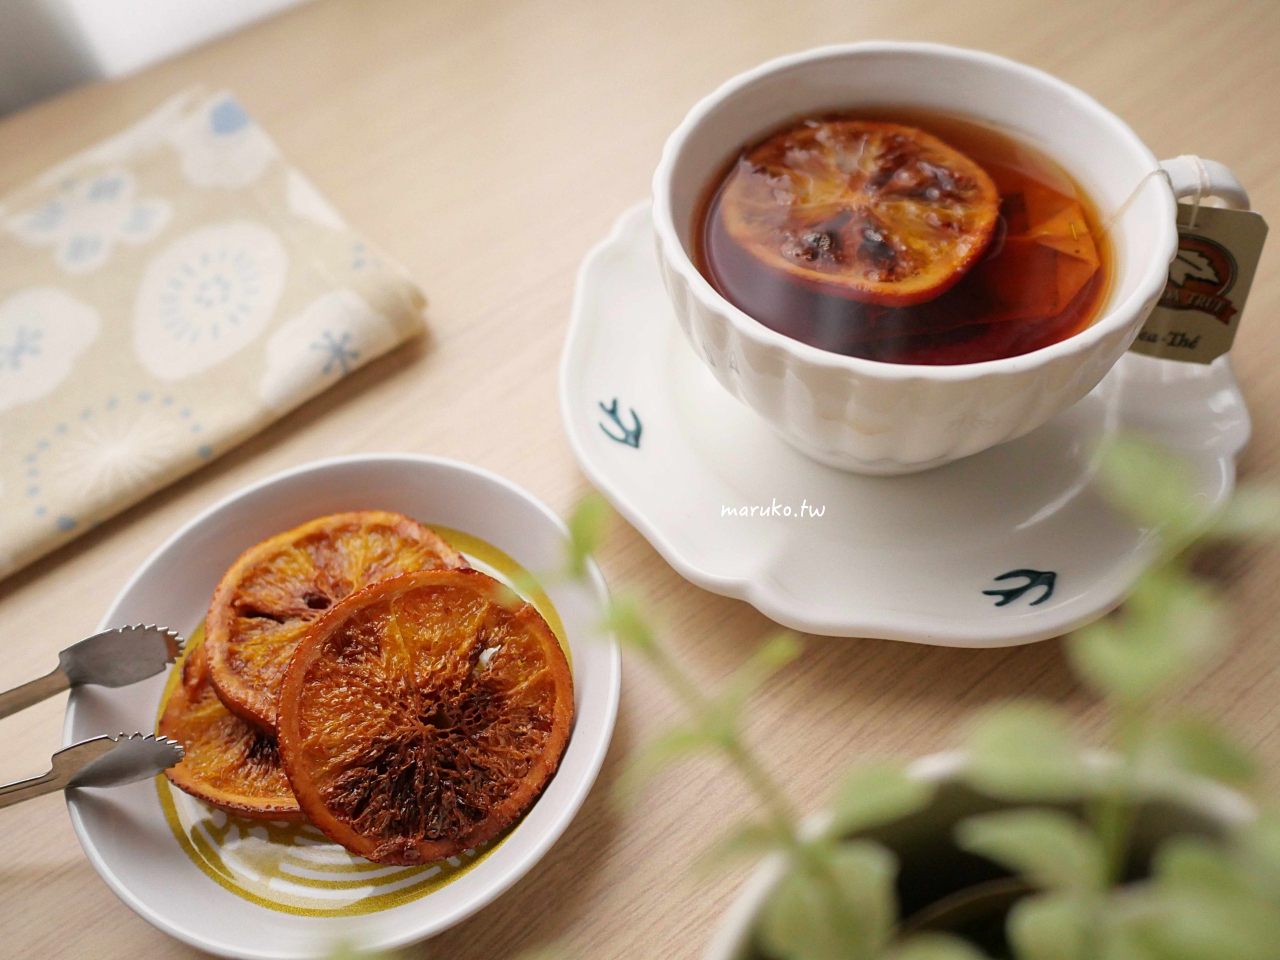 【食譜】糖漬橙片 15分鐘速成脆皮焦糖橙片，氣炸鍋食譜分享！ @Maruko與美食有個約會